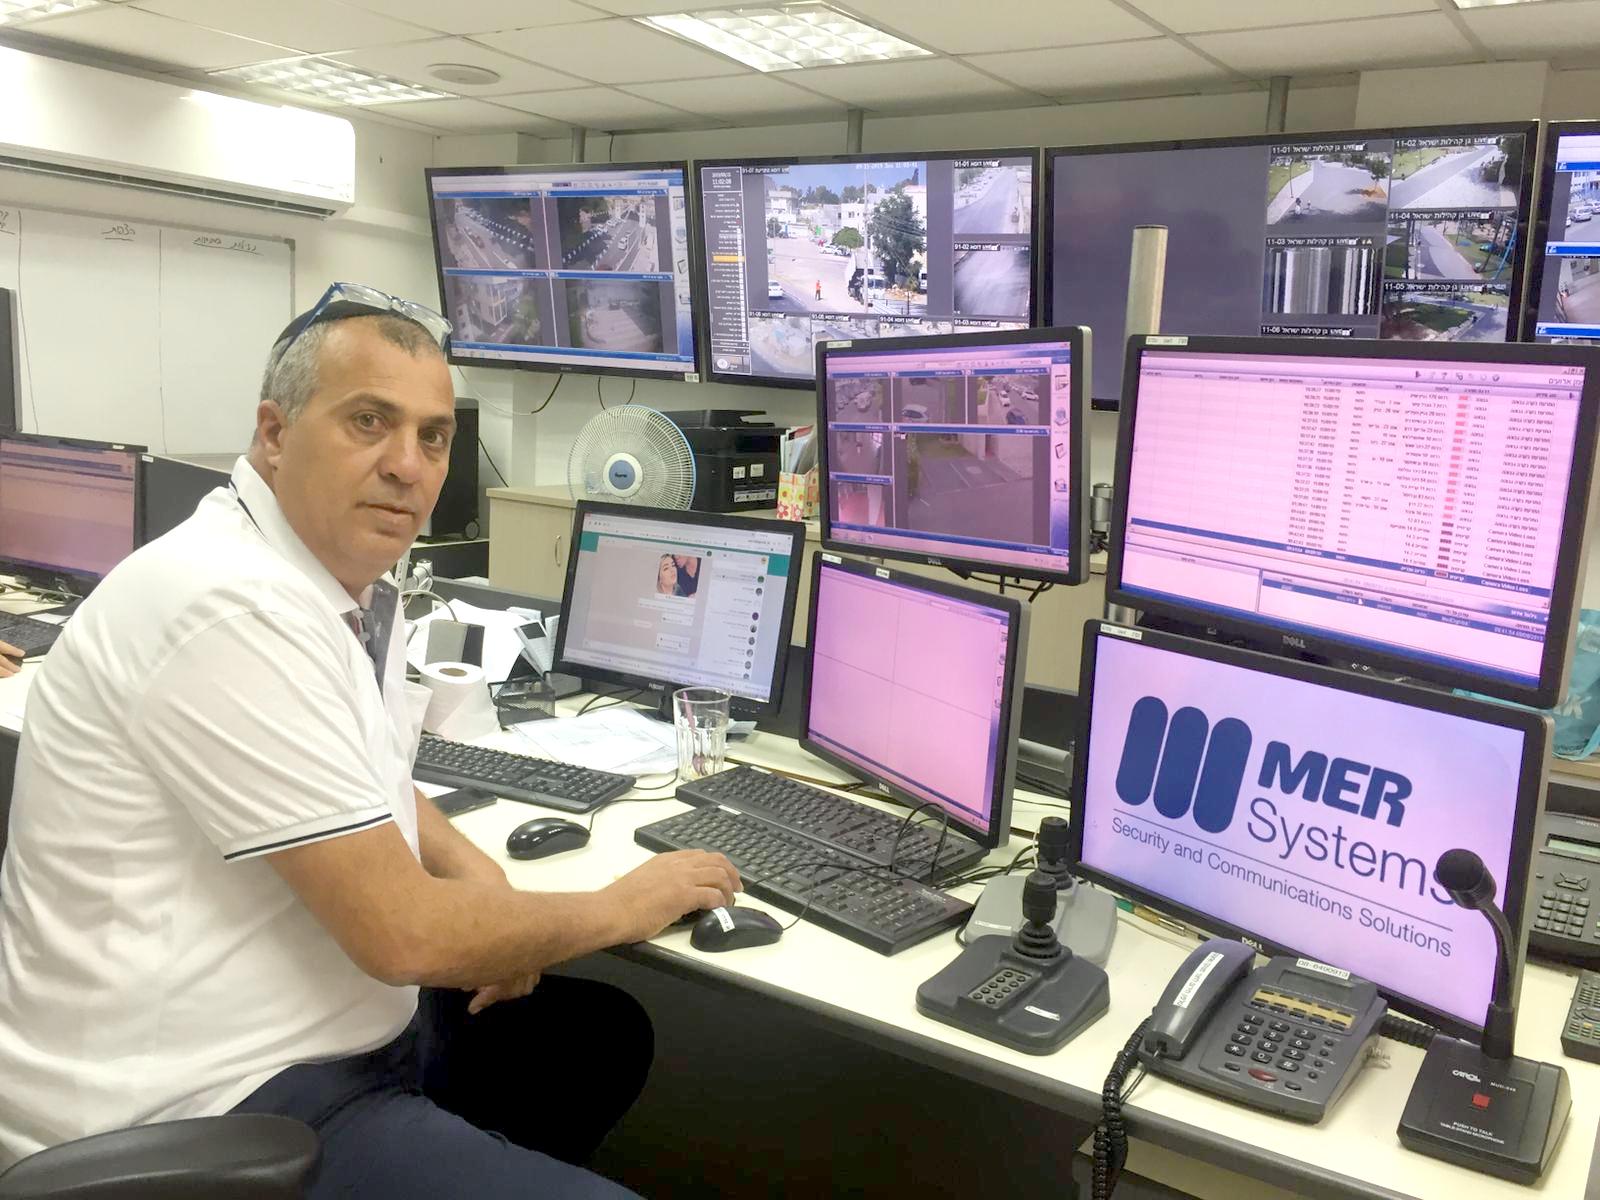 מנהל אגף הביטחון בעיריית לוד, אלי דיין: "השיטור העירוני שלנו – סיירת מטכ"ל של ביטחון העיר לוד"